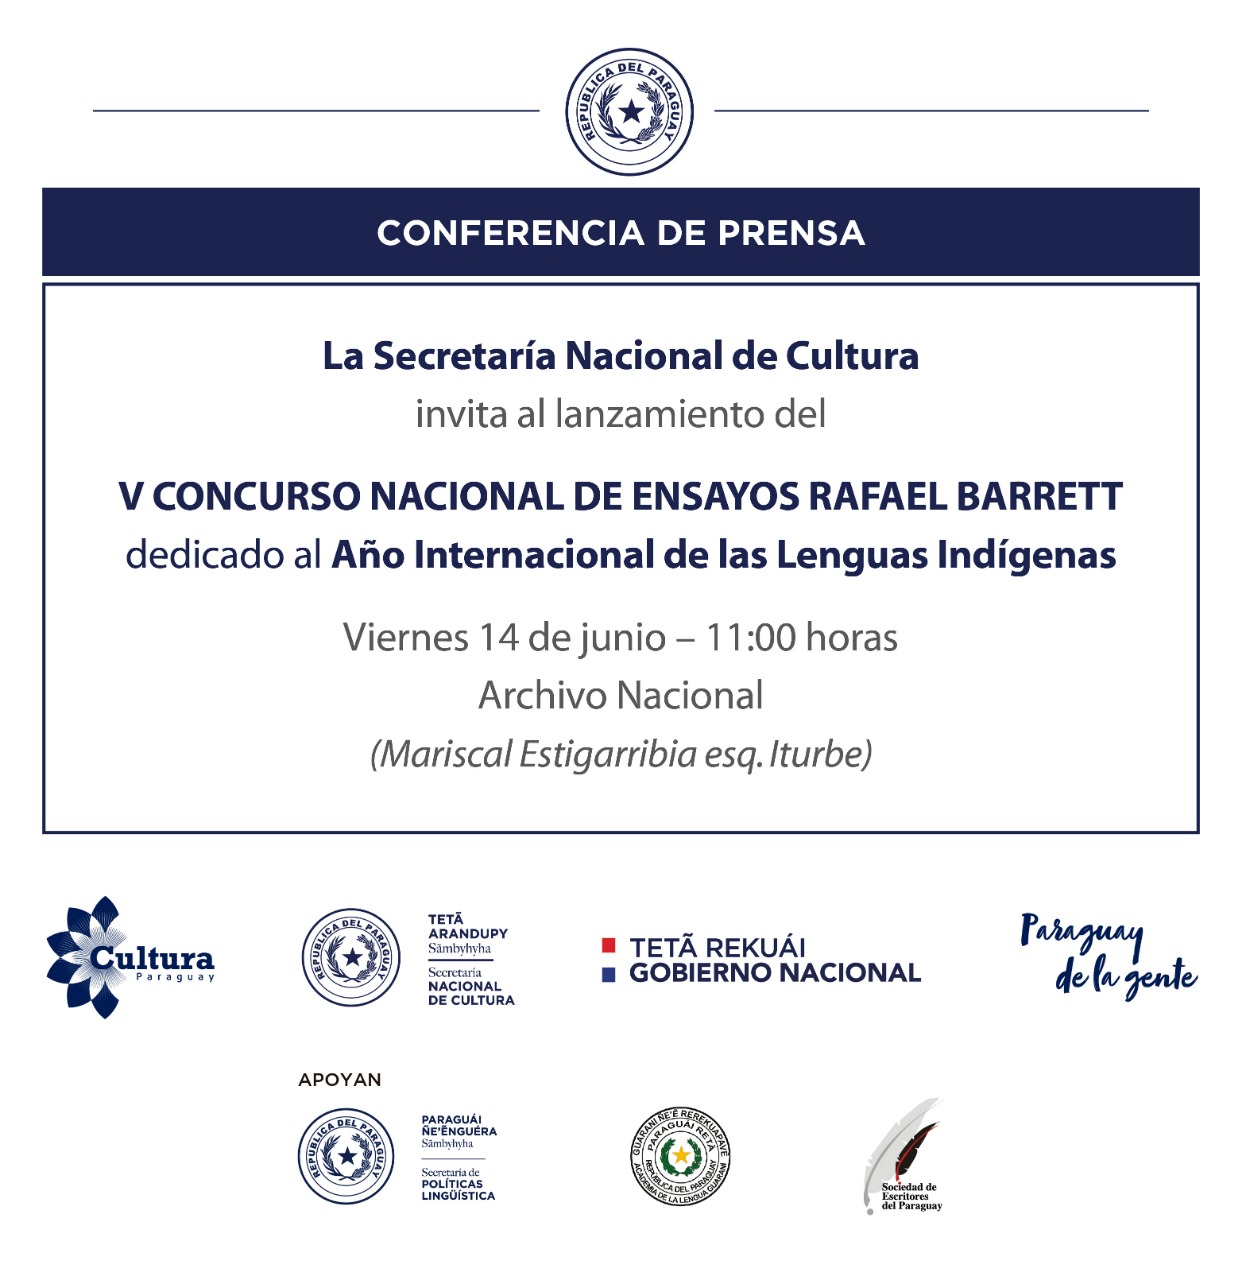 Conferencia de Prensa sobre el V Concurso Nacional de Ensayos Rafael Barrett imagen